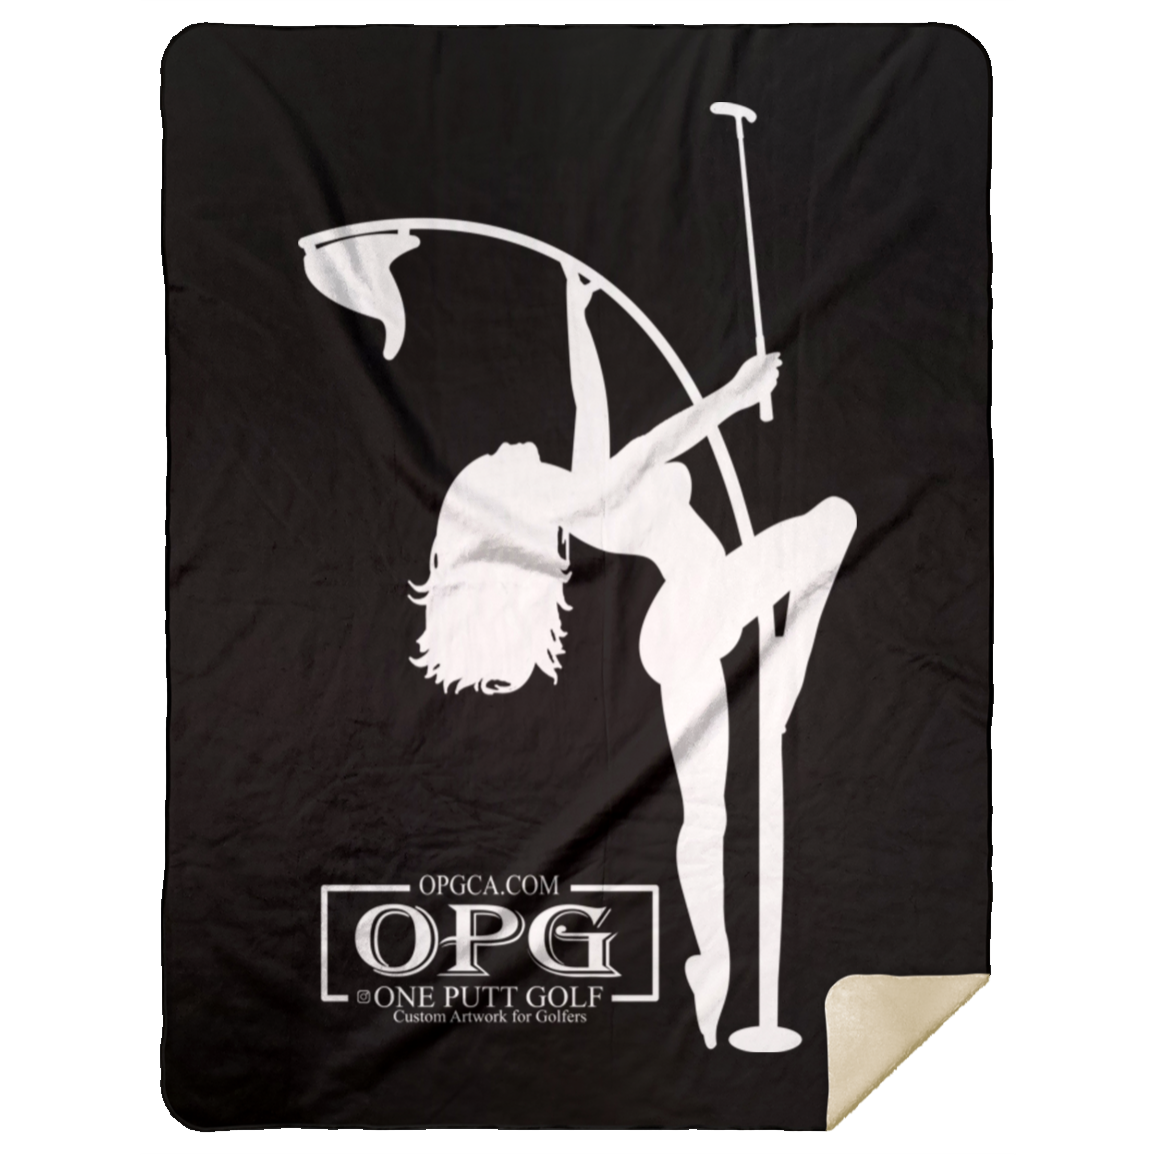 OPG Custom Design #10. Flag Pole Dancer. Premium Mink Sherpa Blanket 60x80